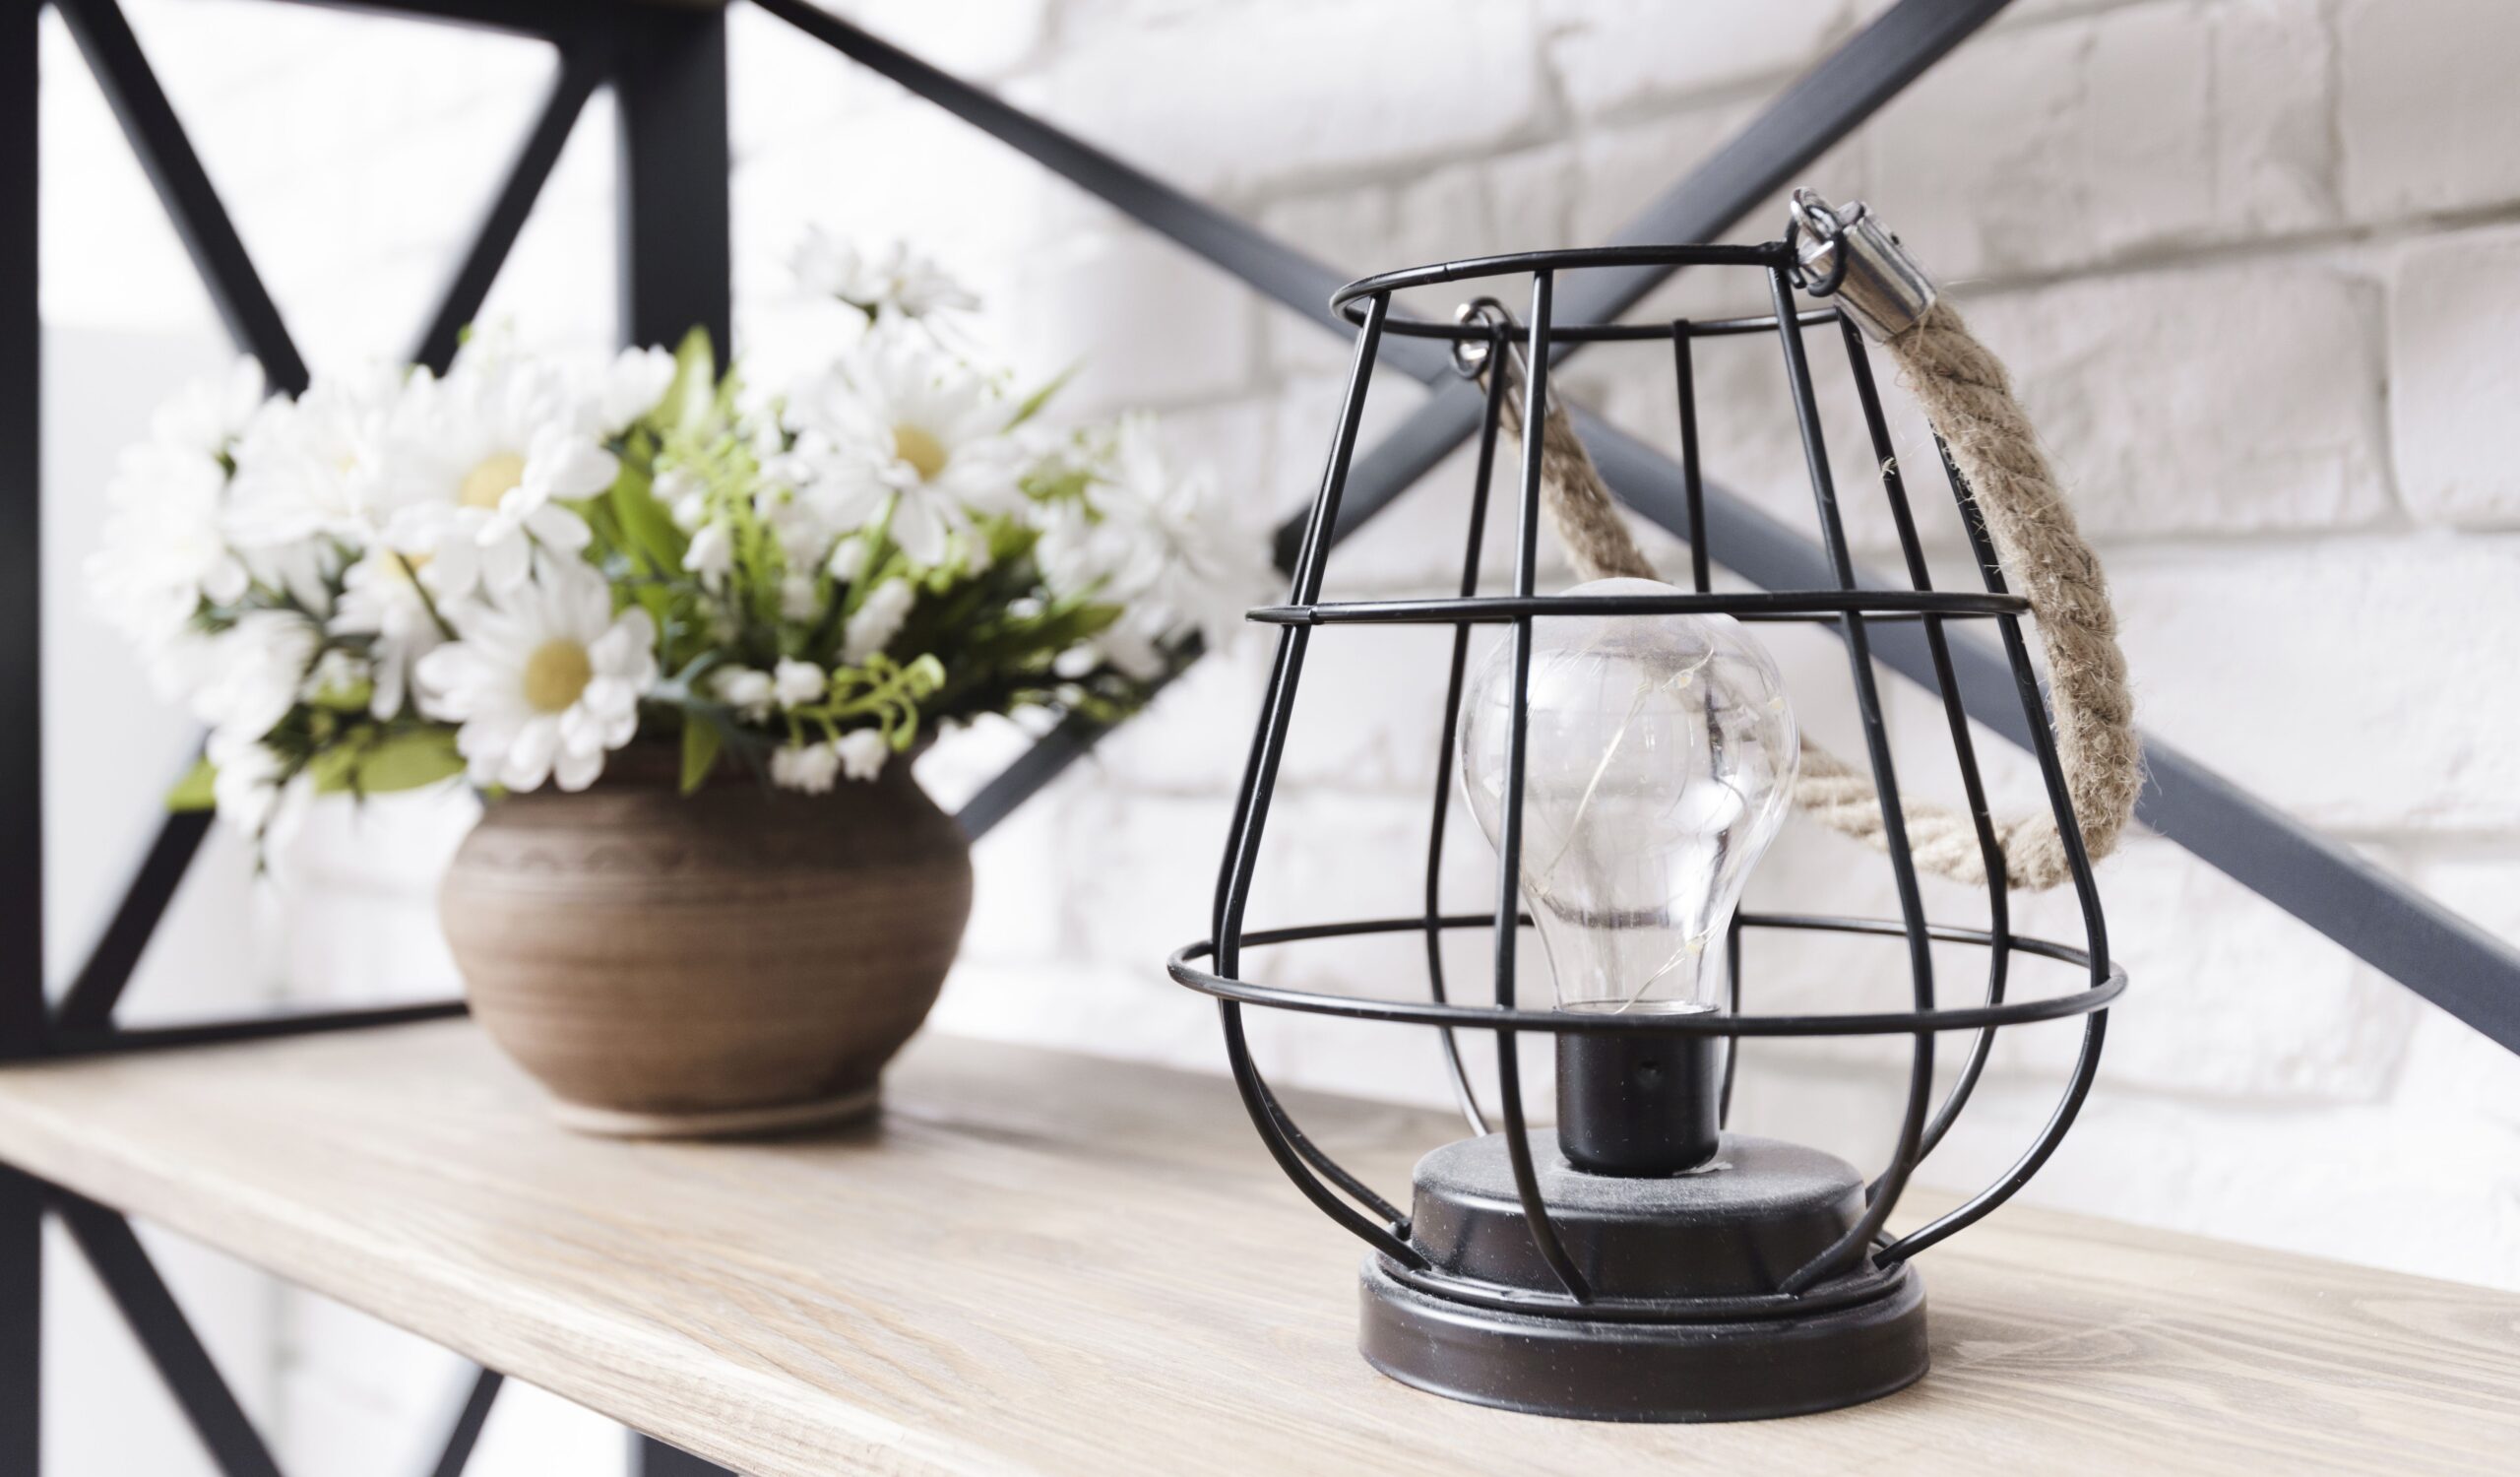 Decora tu hogar con lámparas minimalistas